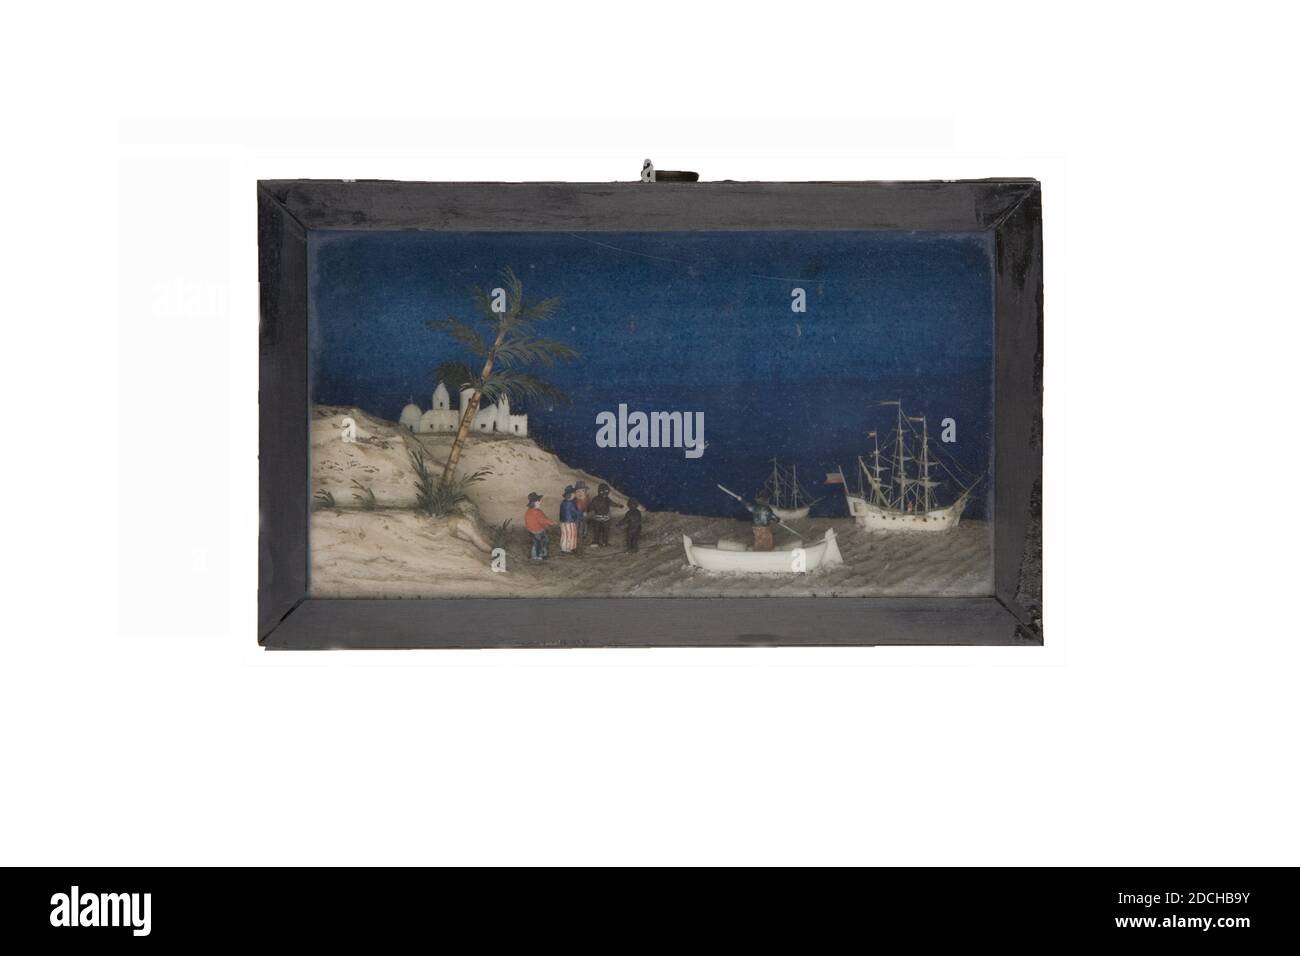 Bavelaar, Cornelis Bavelaar der Ältere oder der Jüngere, zwischen 1747-1831, Knochen, Holz, Glas, geschnitzt, Allgemein: 8 x 13.7 x 3,7cm 80 x 137 x 37mm, mit Aufhängeöse: 8.7 x 3.7 x 3,7cm 87 x 37 x 37mm, Strand, Schiff, geschnitzte Darstellung eines maurischen Strandes mit Gebäuden und Schiffen. Die Performance enthält drei Schiffe, einen Strand mit Menschen und einer Palme und ein Stadtbild im Hintergrund. Die menschlichen Figuren und die Palme sind farbig. Der Schrank ist aus Holz mit einer Kartonrückseite und einem Metallring auf der Oberseite, 1890 Stockfoto